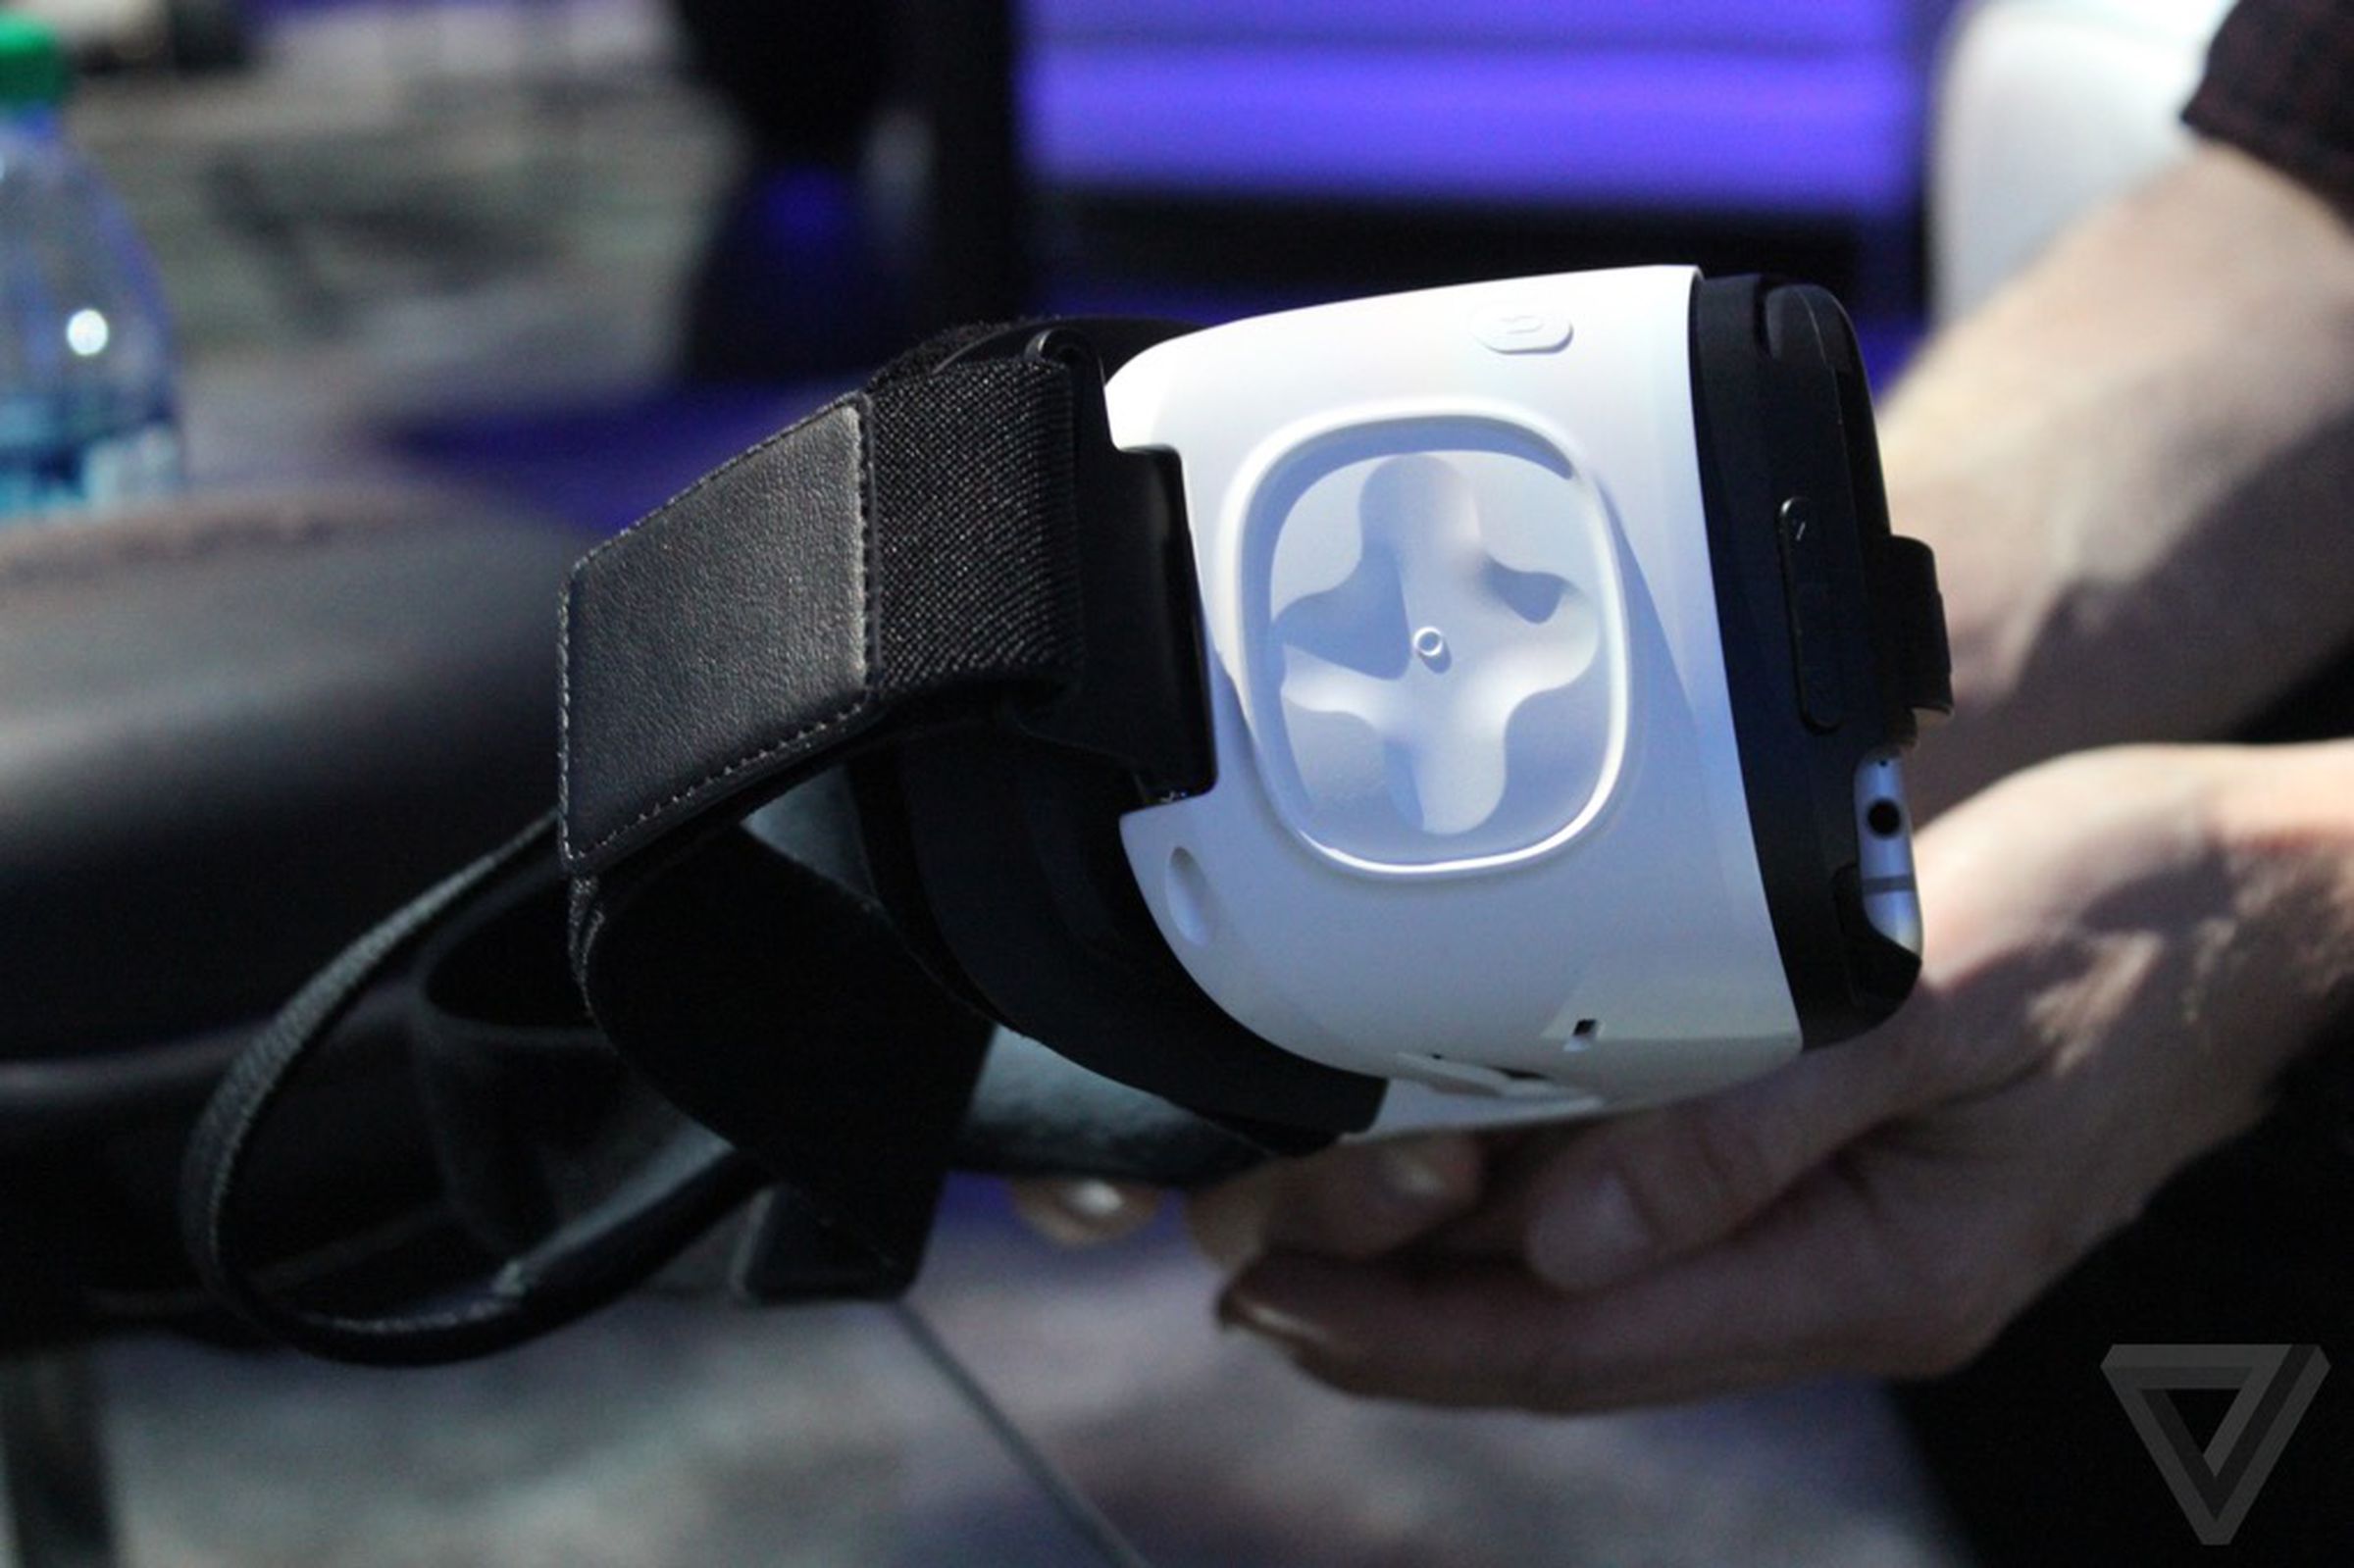 Samsung Gear VR Consumer